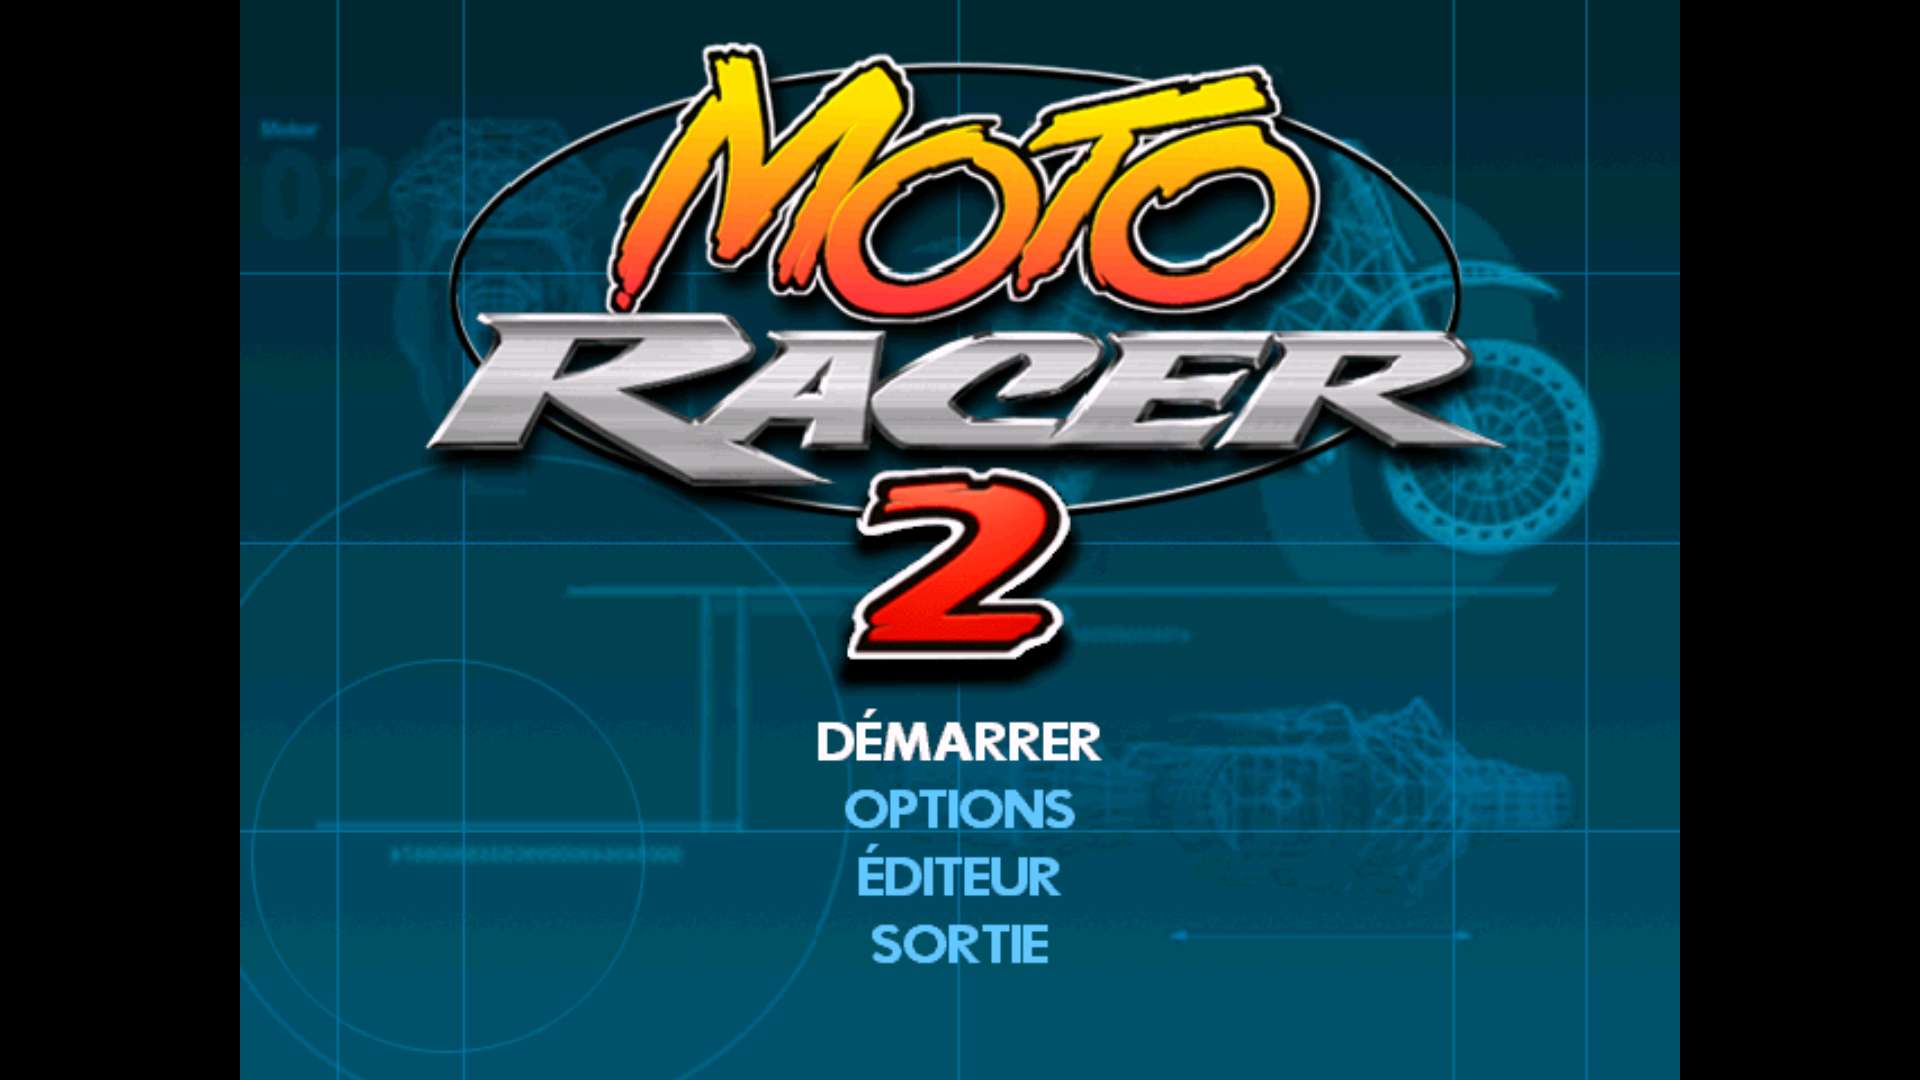 Moto Racer 2 on